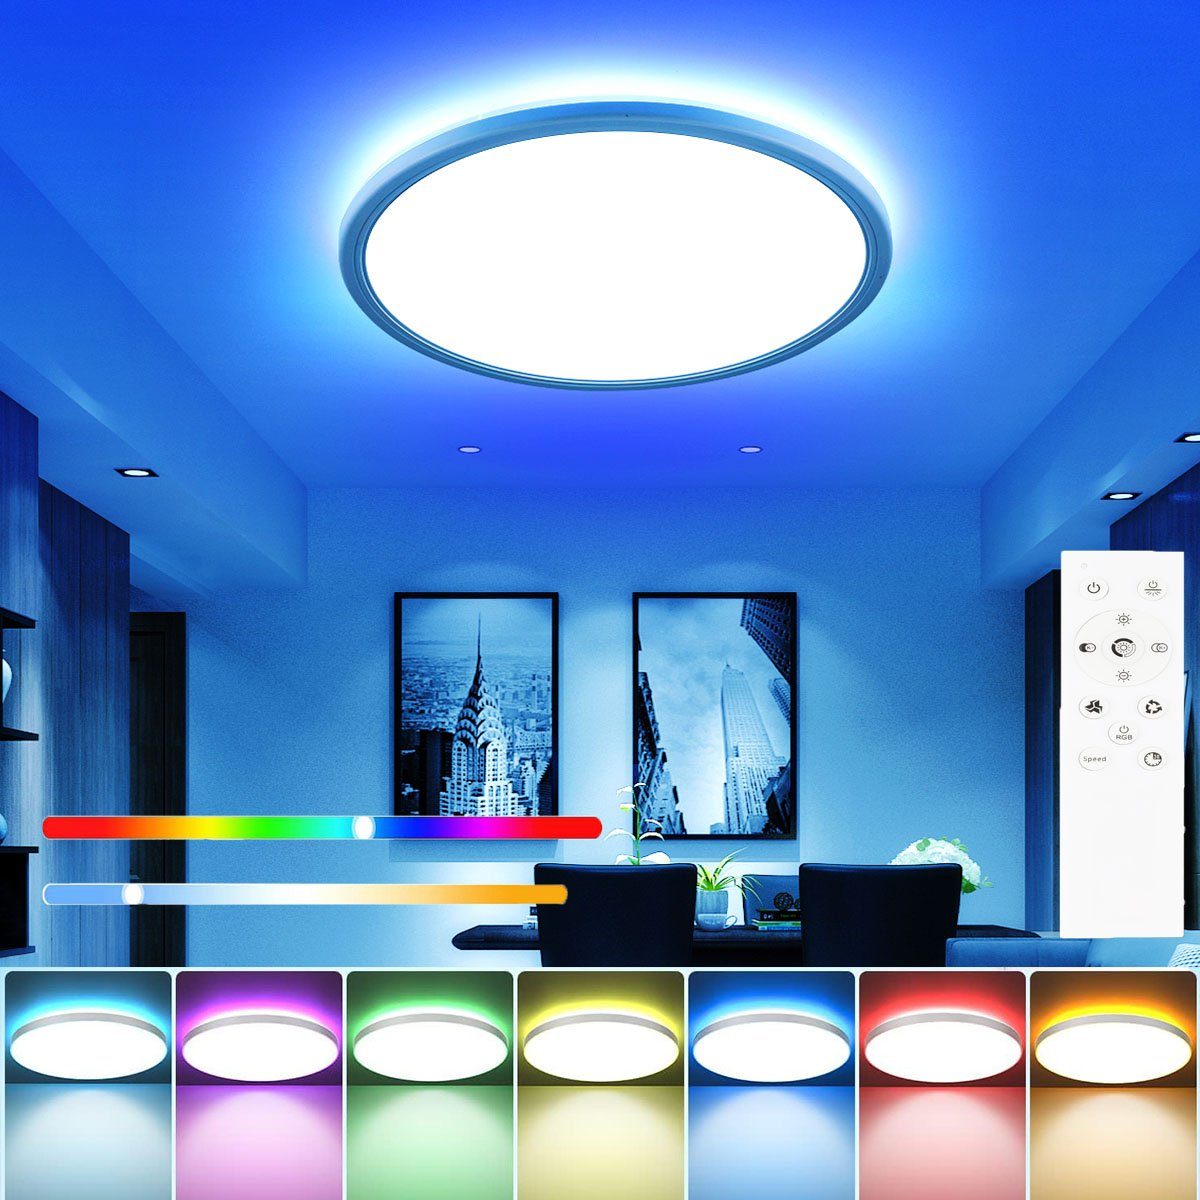 LETGOSPT LED Deckenleuchte 24W Ultra Dünn LED Deckenlampe 30 x 3cm, RGB Hintergrundlicht Dimmbare, LED fest integriert, Kaltweiß+Naturweiß+Warmweiß+RGB, Flach Rund Deckenbeleuchtung, für Schlafzimmer Küche Wohnzimmer Bad | Deckenlampen